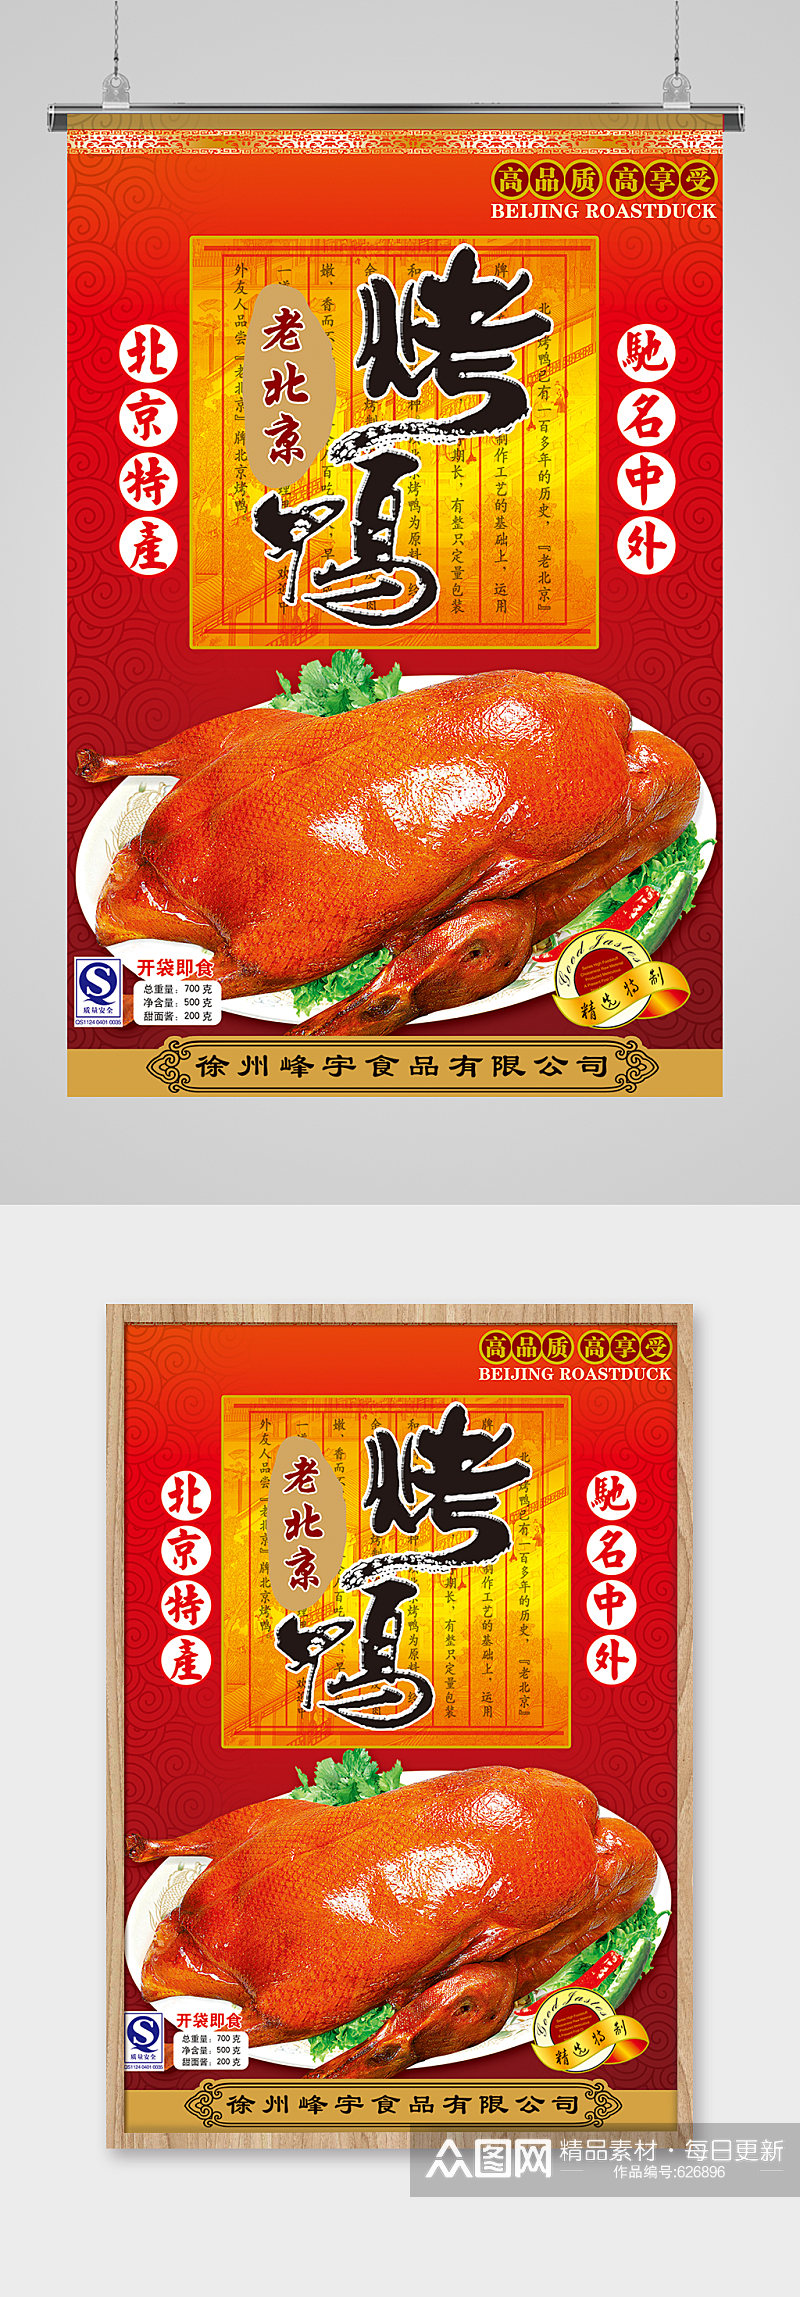 美味烤鸭北京烤鸭海报素材